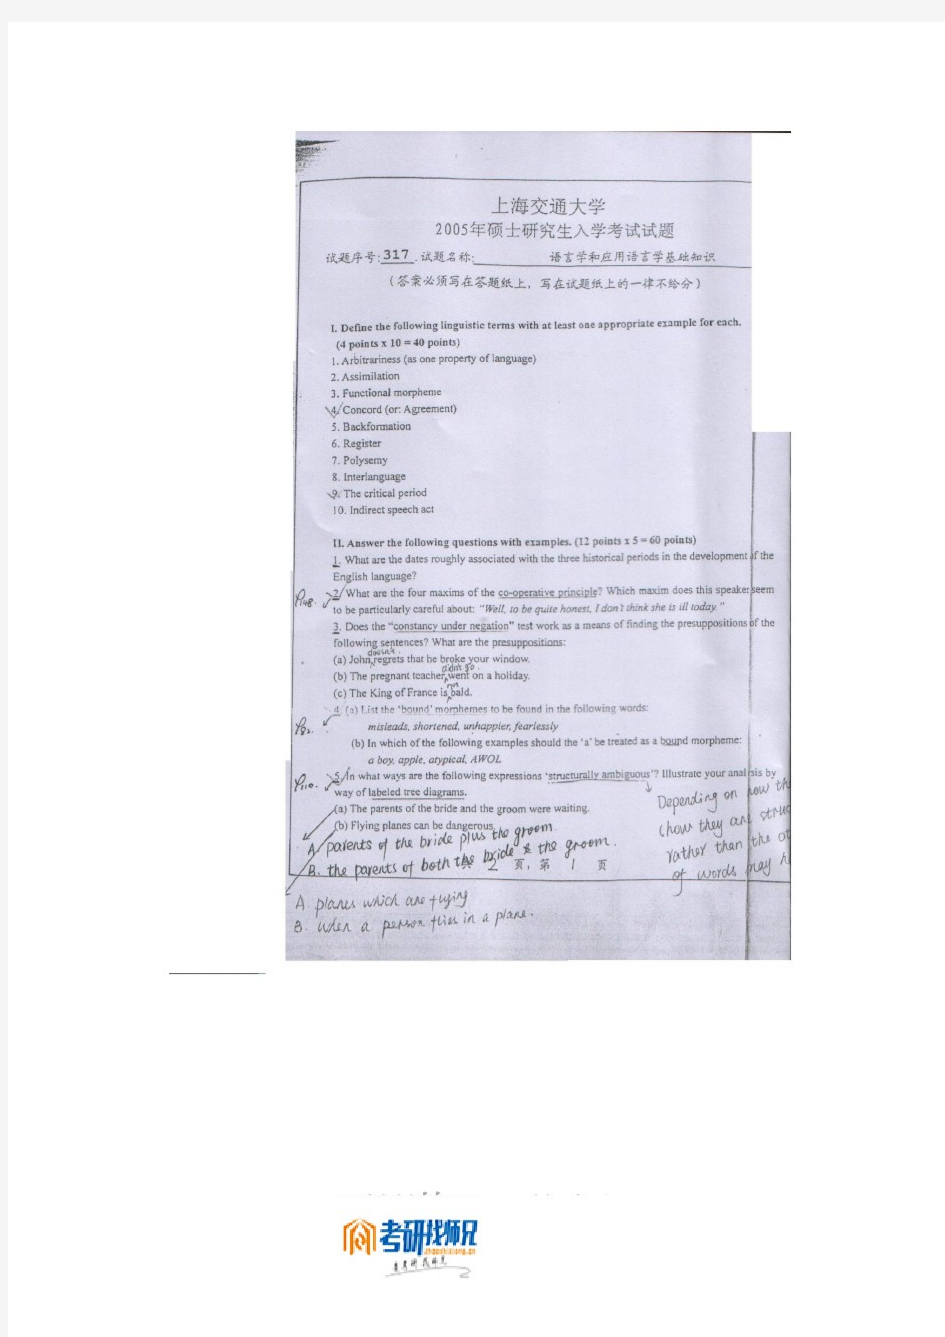 上海交通大学语言学和应用语言学基础知识2005真题